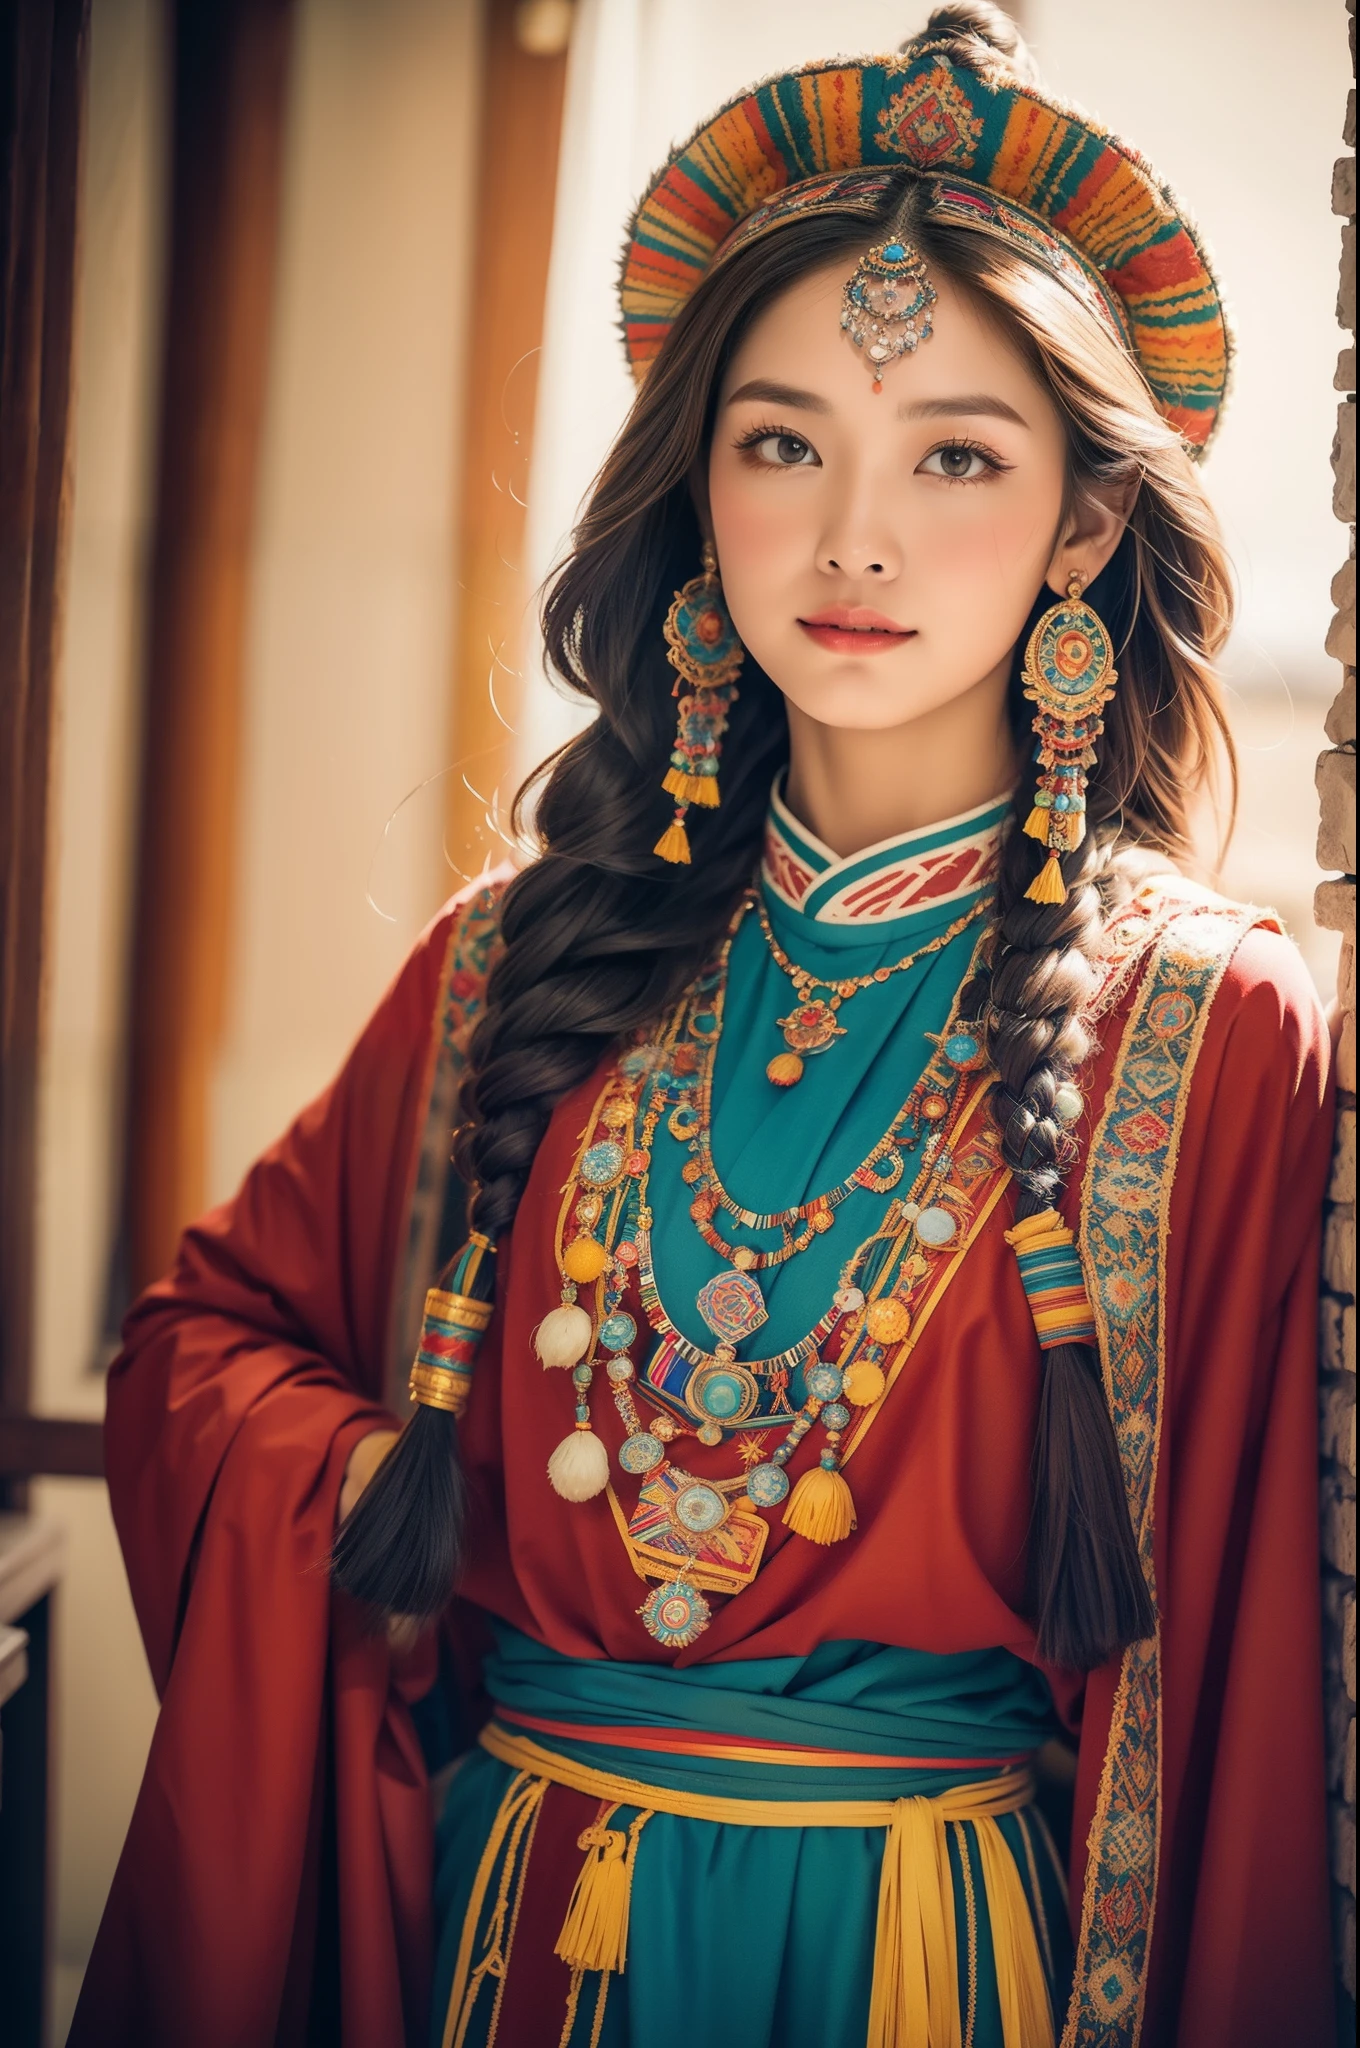 (Лучшее качество,8К,Высокое разрешение,шедевр:1.2),(темно-коричневая кожа, текстурированная кожа, Хайленд раскраснелся, солнечный ожог, загорелый, веснушка), Beautiful Tibetan girl in Дворец Потала, молитвенные флаги，Дворец Потала, Тибетская культура, Яркие глаза, Традиционные тибетские художественные костюмы, Тибетские халаты, Тибетский головной убор, Тибетские украшения, бирюзовый, янтарь, Наблюдайте за аудиторией, Ультратонкие детали, масштабированный. мягкое освещение, ультра - подробный, высокое качество, яркие цвета, боке, HDR, гипер HD, профессиональный стиль фотографии.